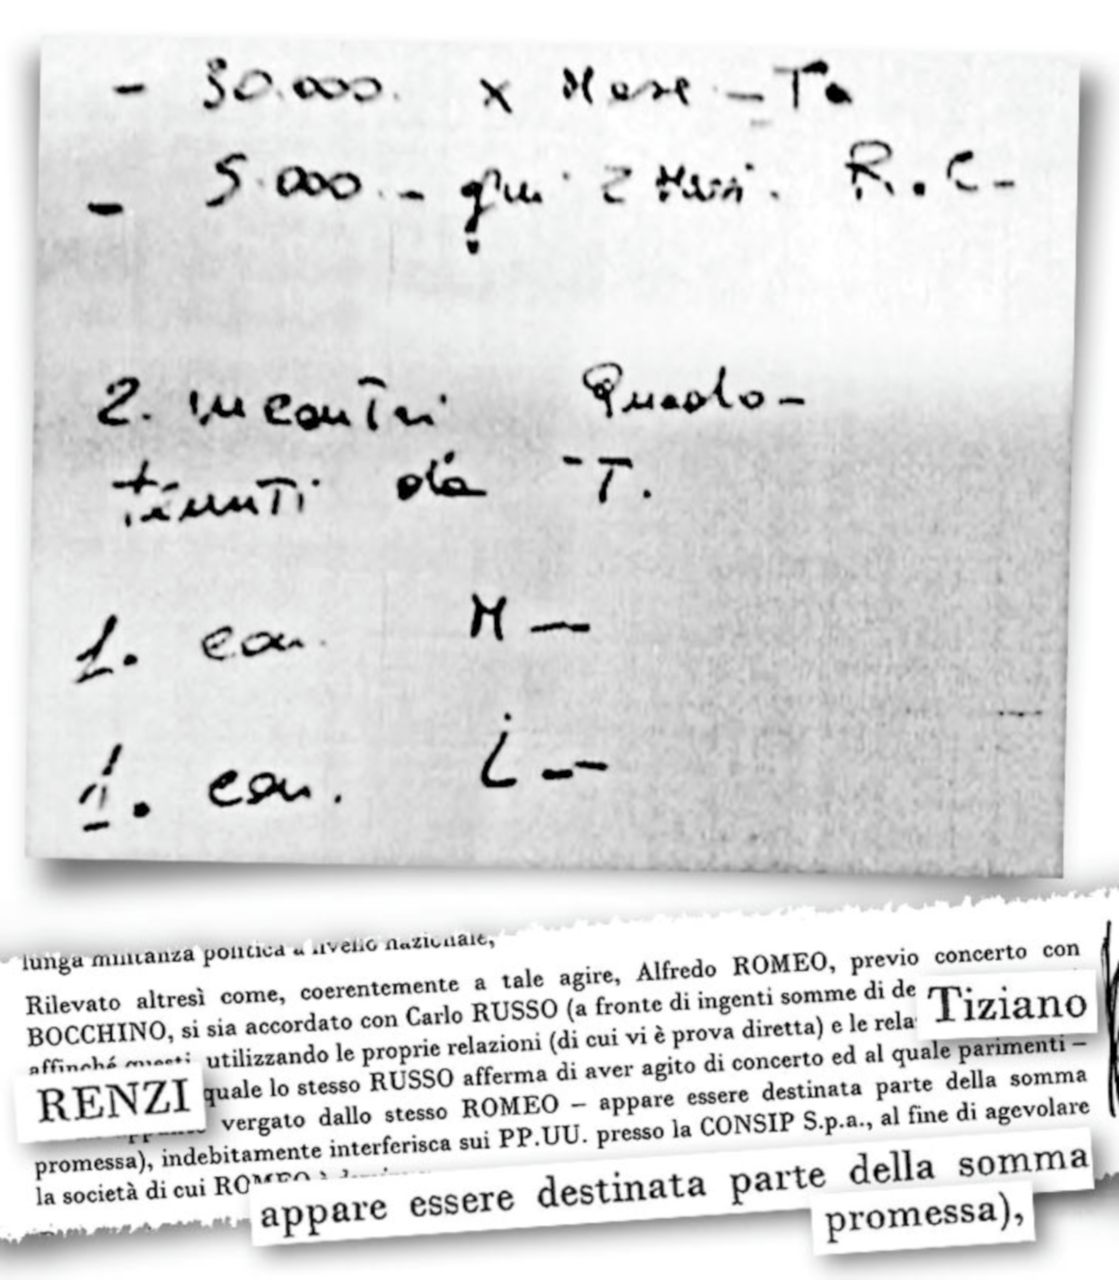 Copertina di “Ecco il pizzino con i 30 mila al mese per Tiziano”